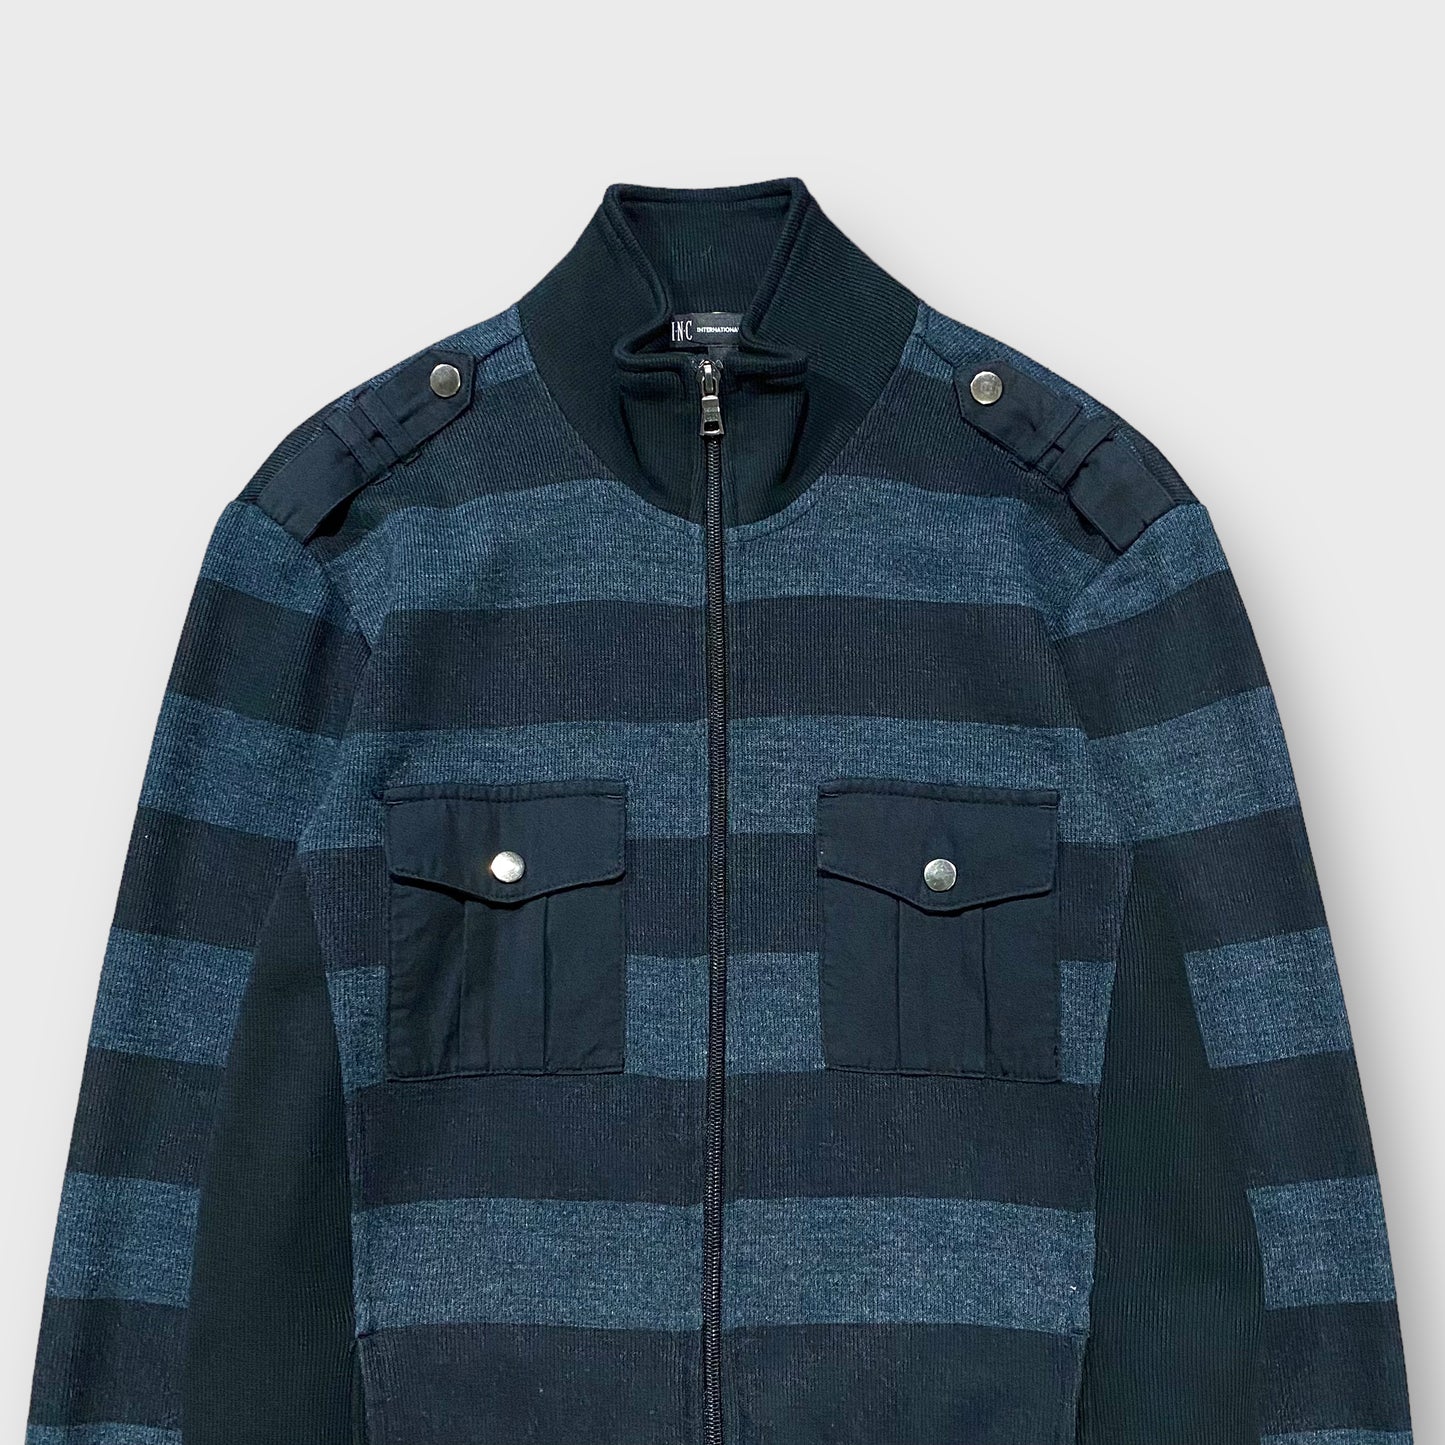 Border pattern high-neck knit jacket